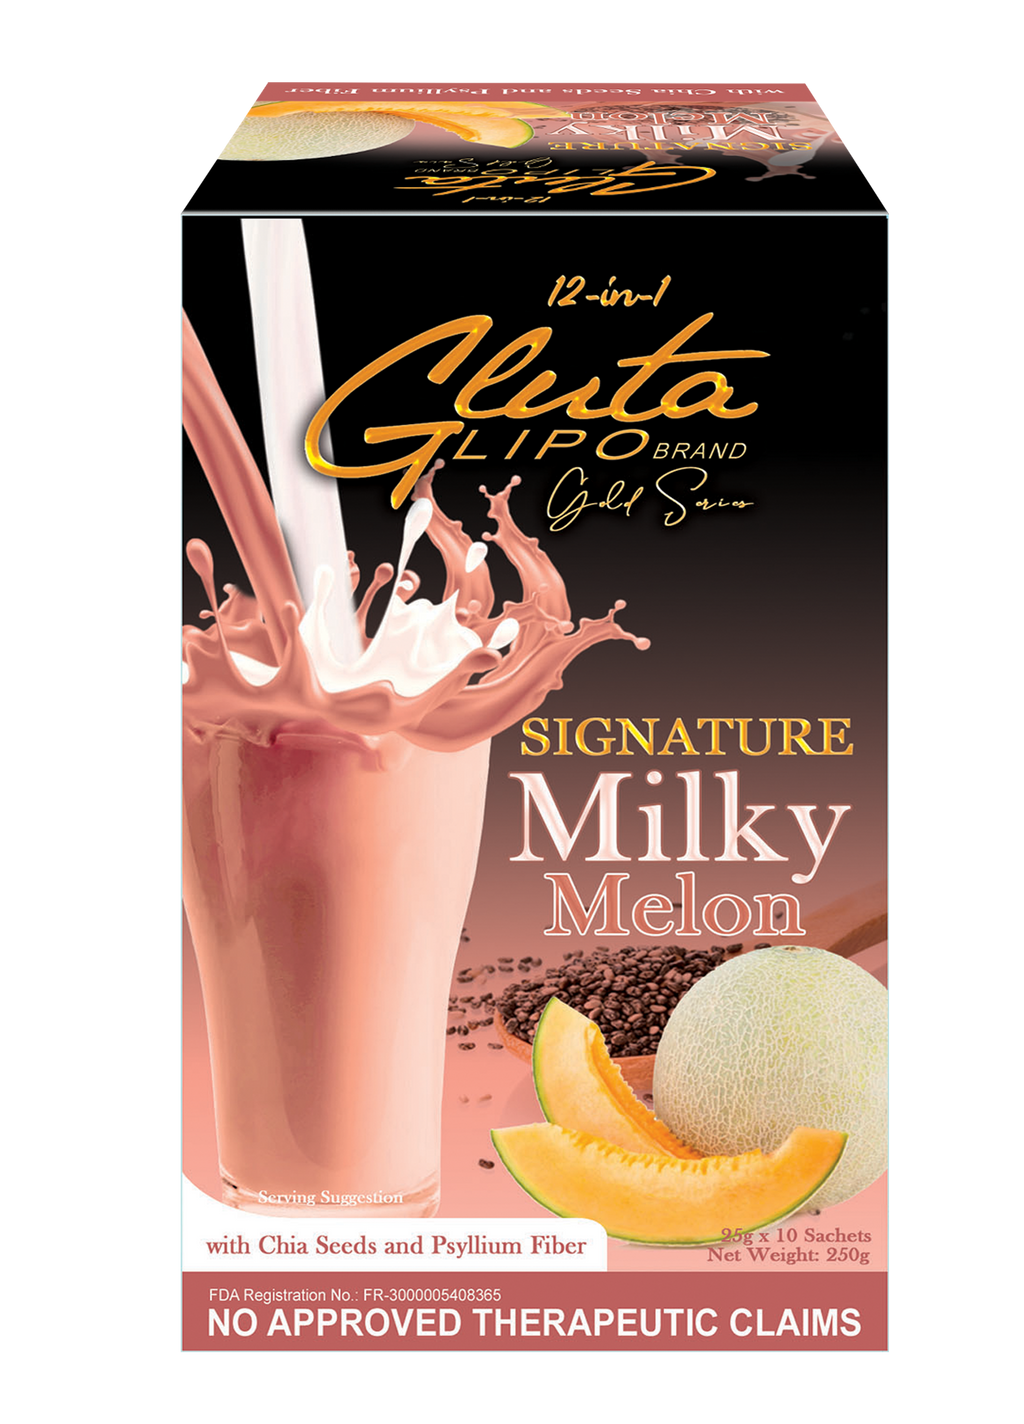 Glutalipo Gold Series Signature Milky Melon